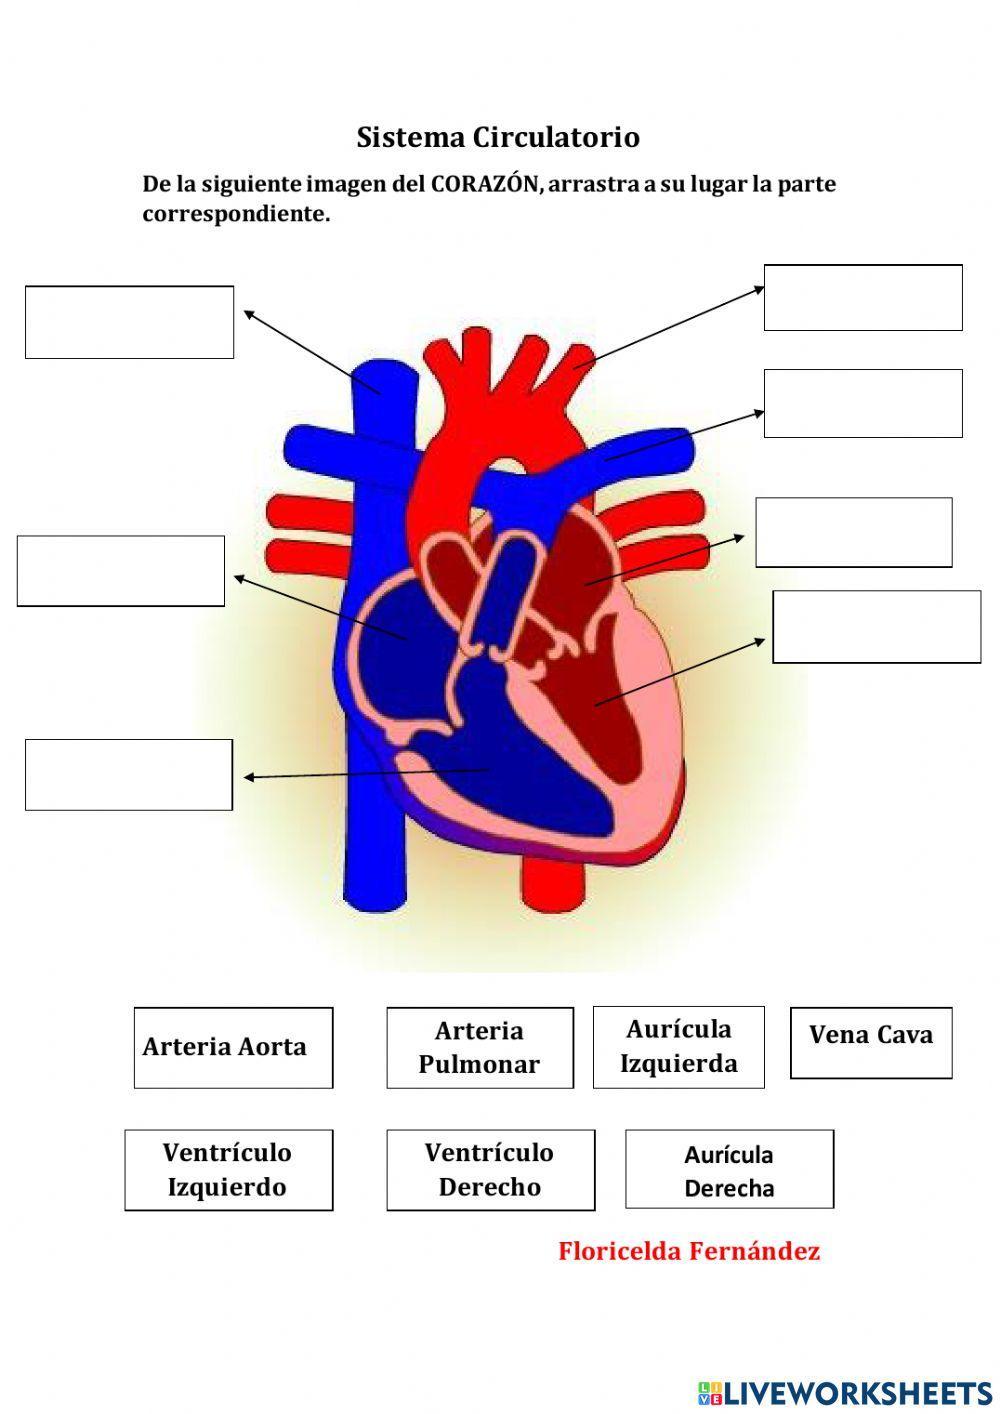 El Sistema Circulatorio. (Partes del Corazón)